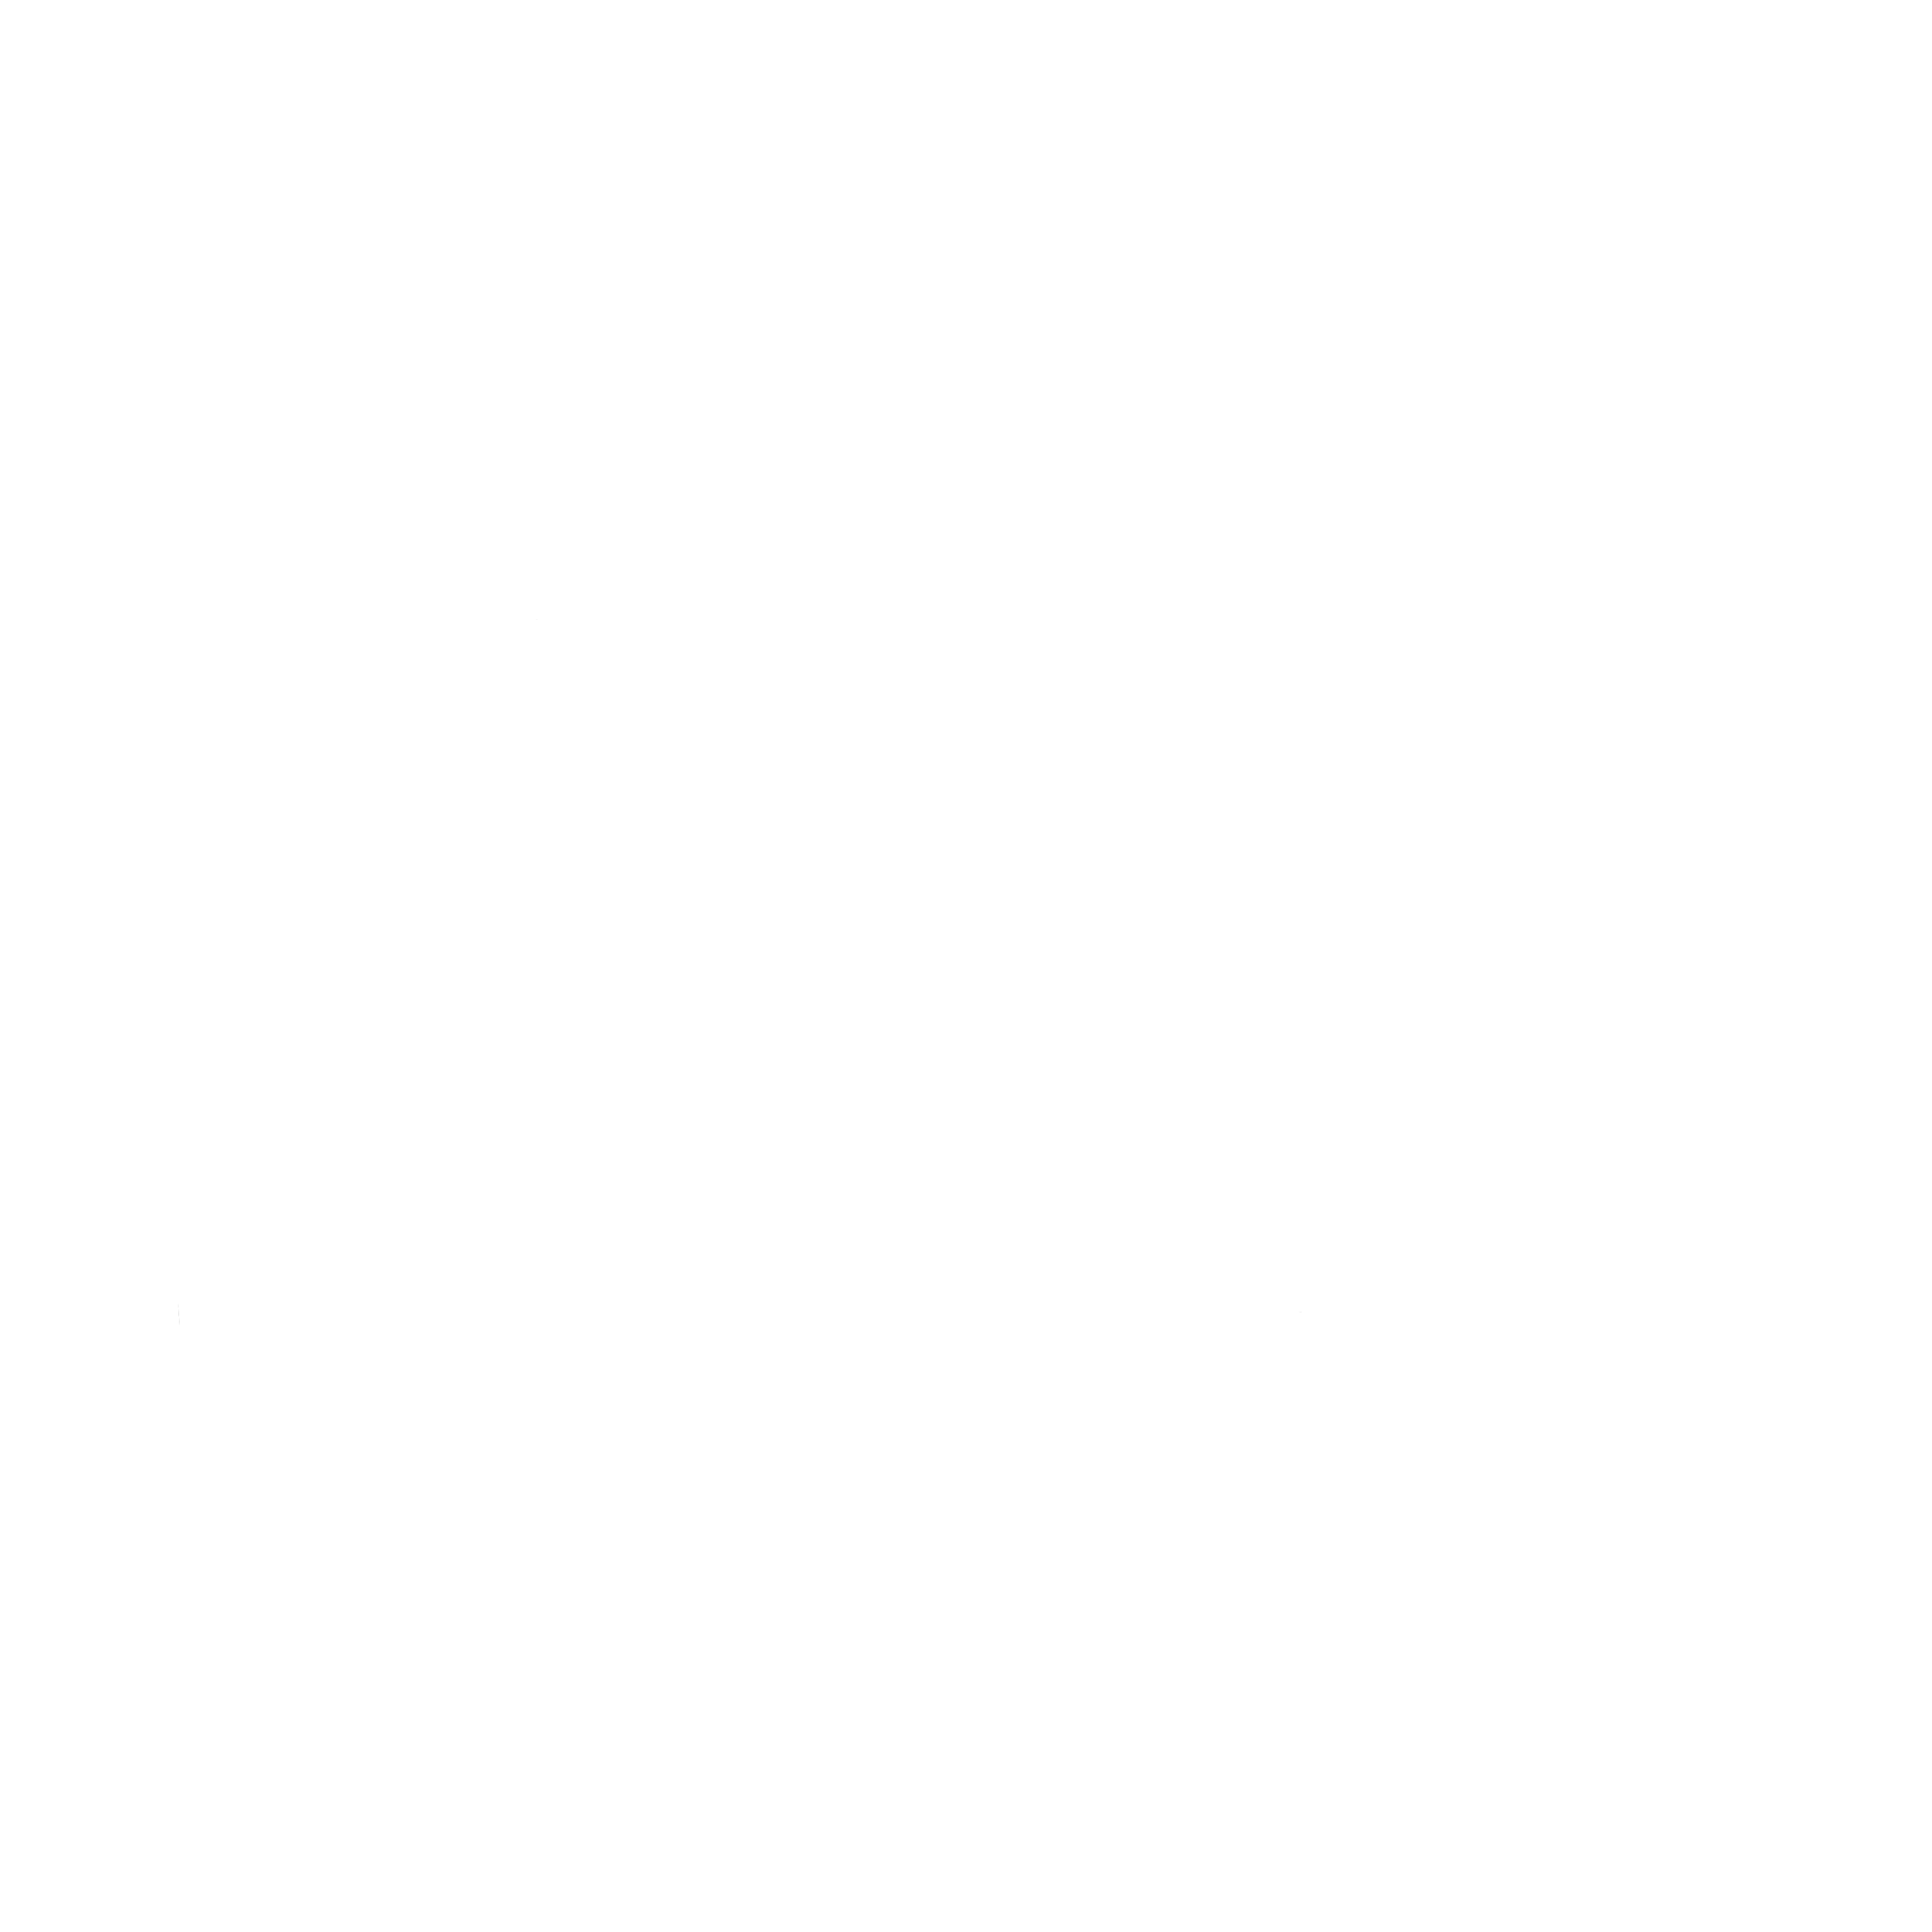 Backwoods Branding Co.